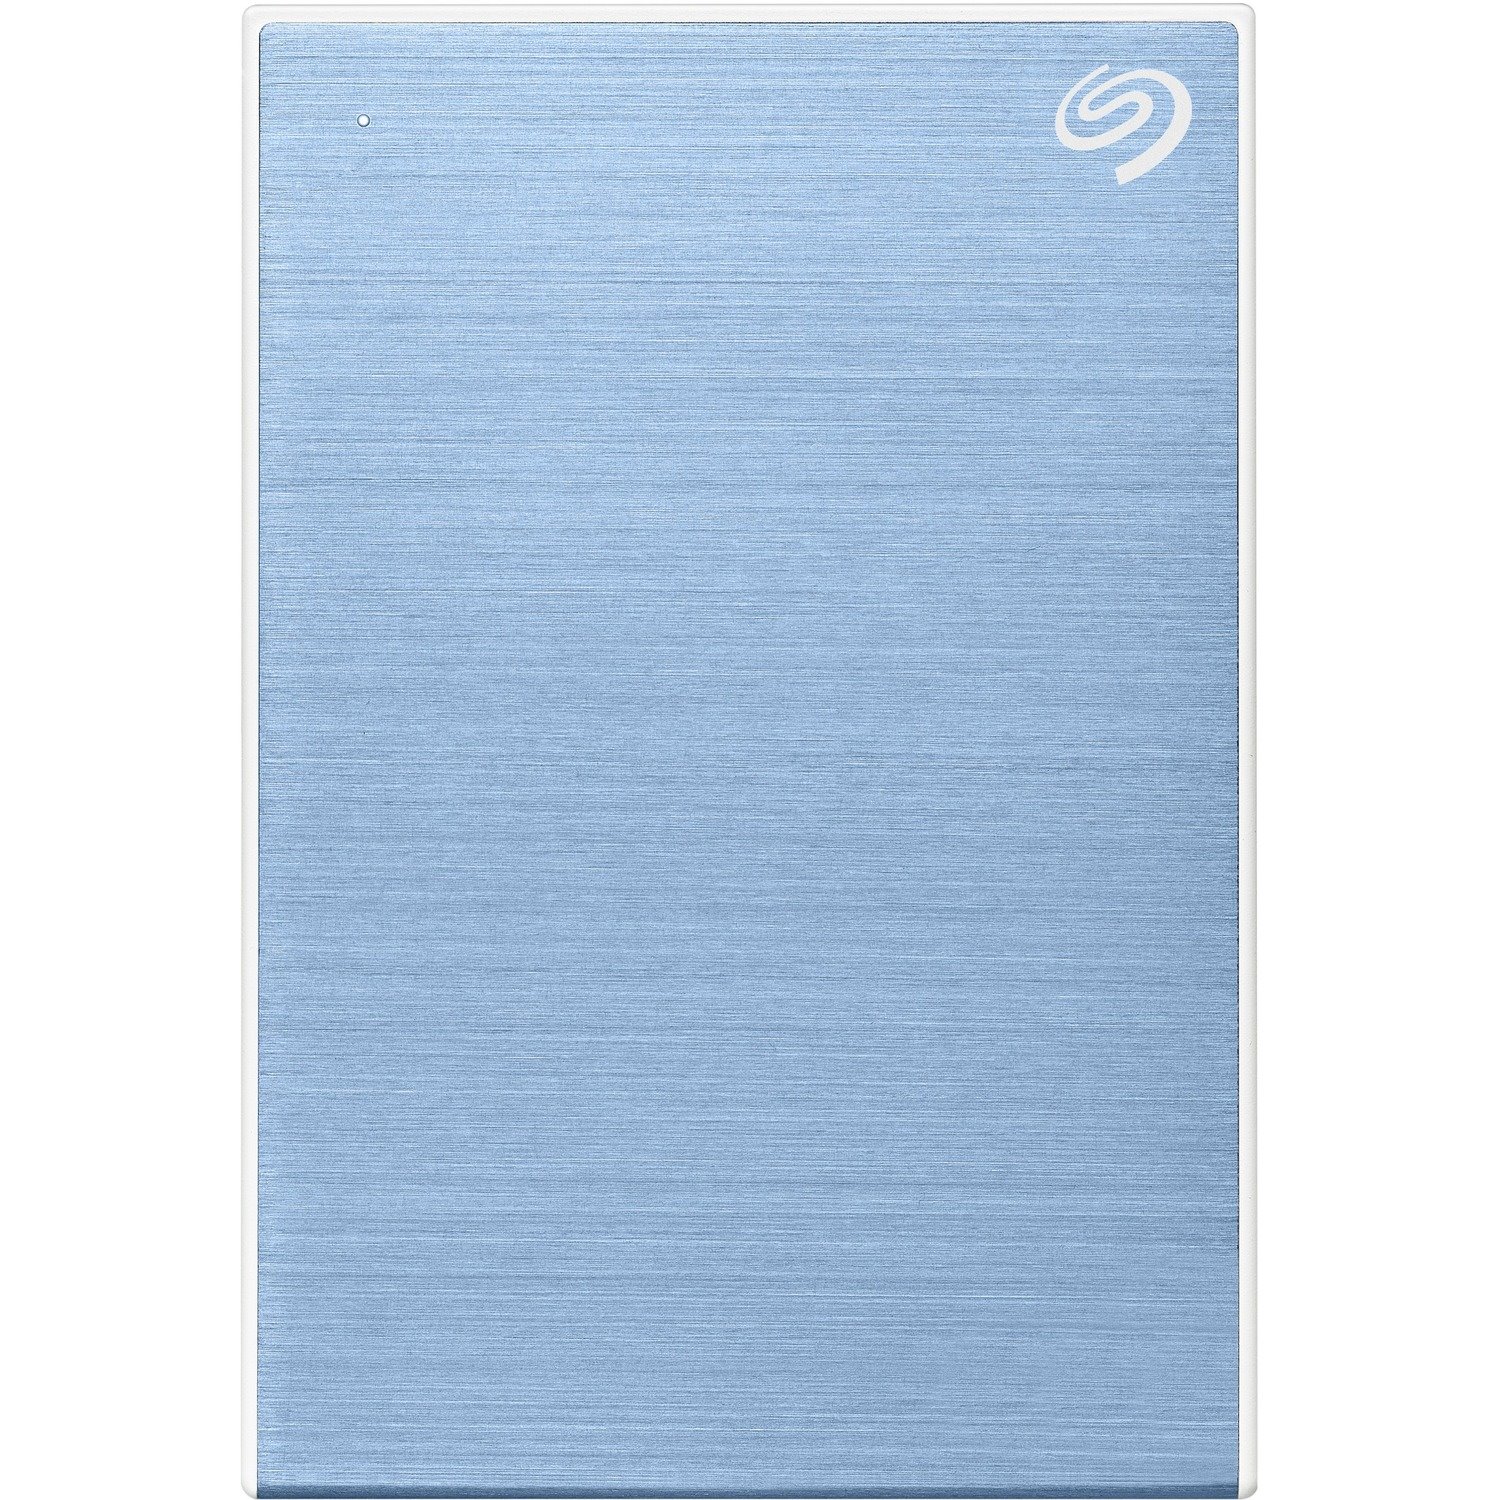 Seagate Backup Plus Slim STHN2000402 2 TB Portable Hard Drive - External - Light Blue